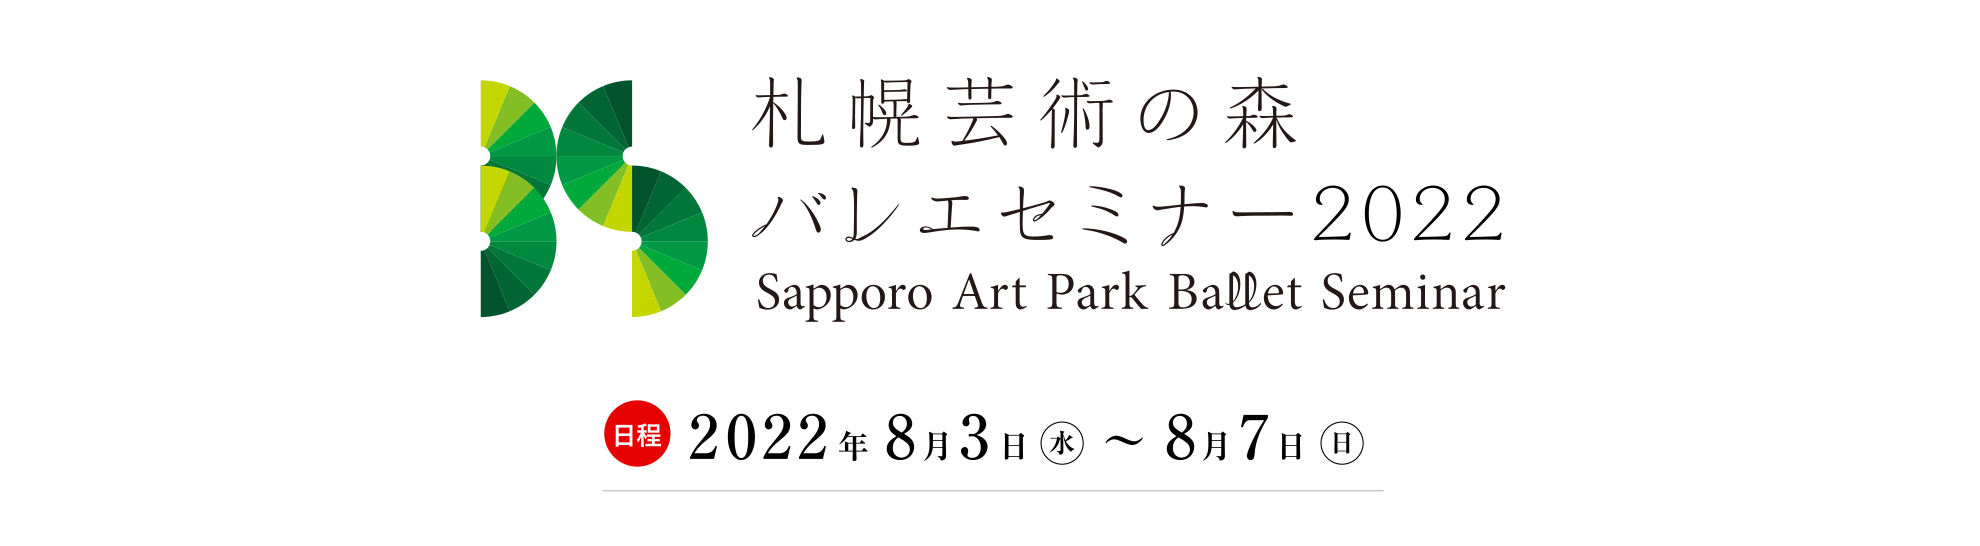 札幌芸術の森 バレエセミナー2022